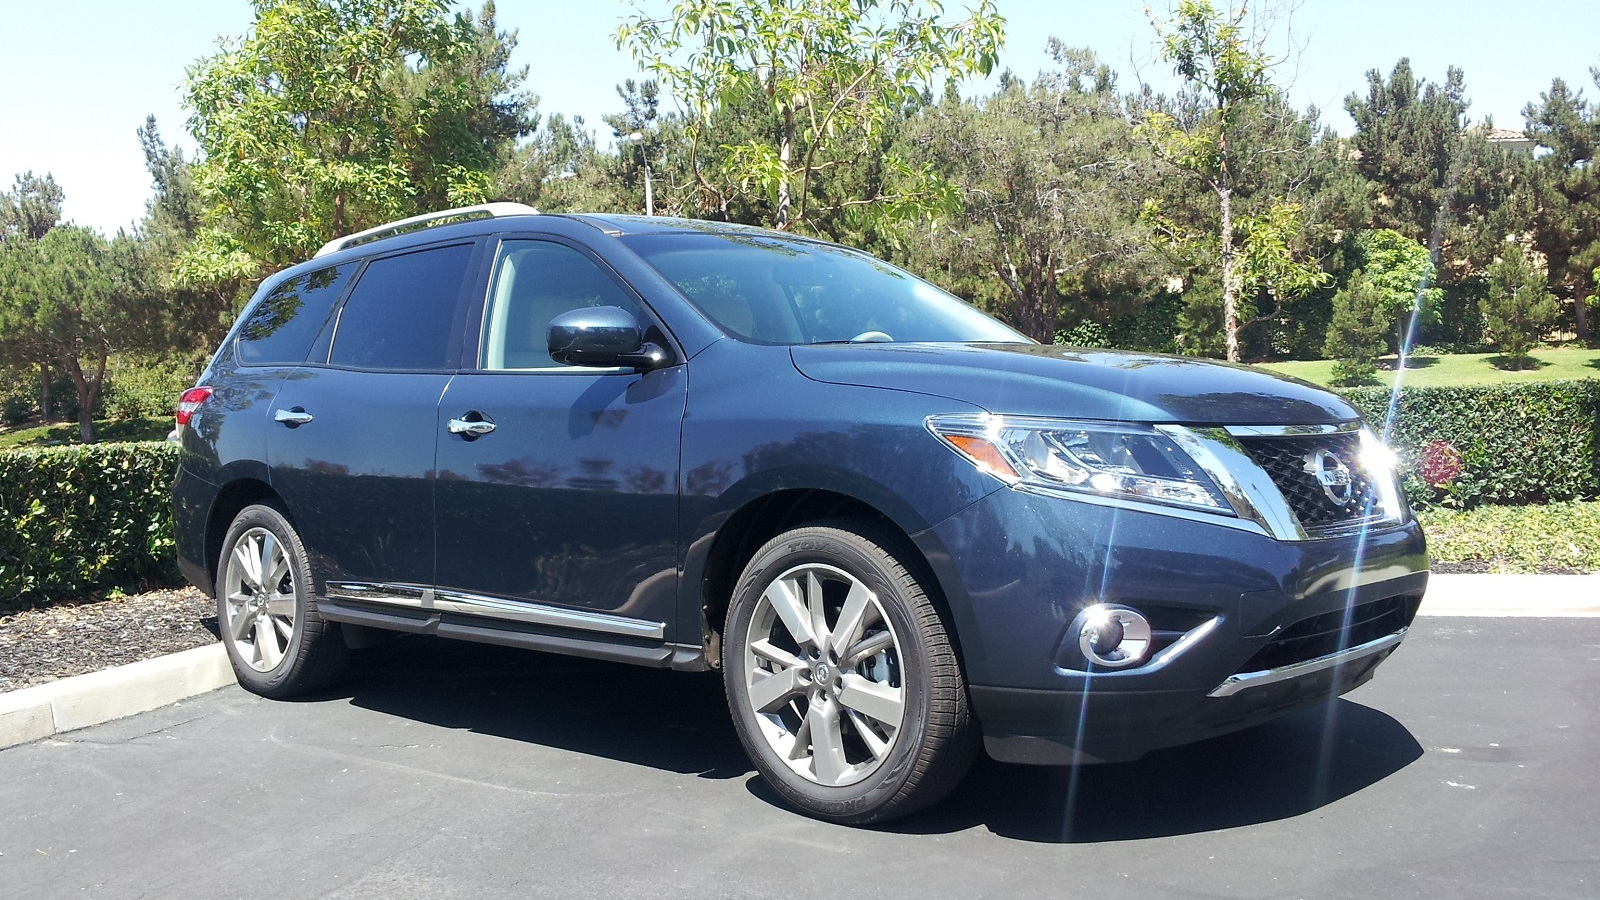 2014 Nissan Pathfinder Hybrid, Irvine, CA, Aug 2013